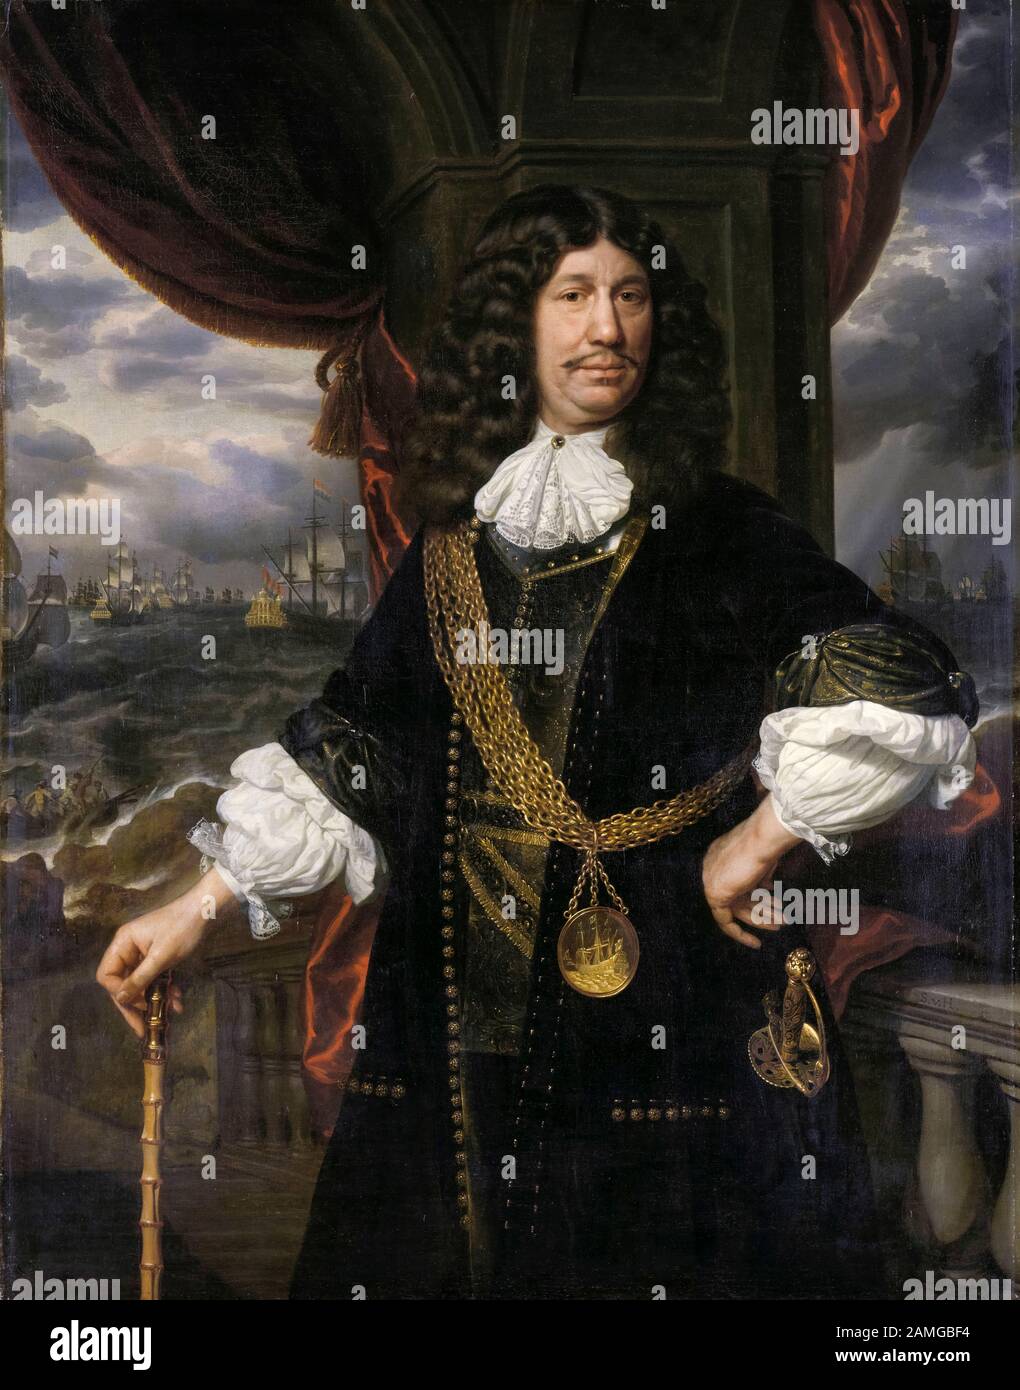 Mattheus van den Broucke (1620-1685), Governor, The Indies, Dutch East India Company medal, portrait painting by Samuel Dirksz van Hoogstraten, 1670-1678 Stock Photo